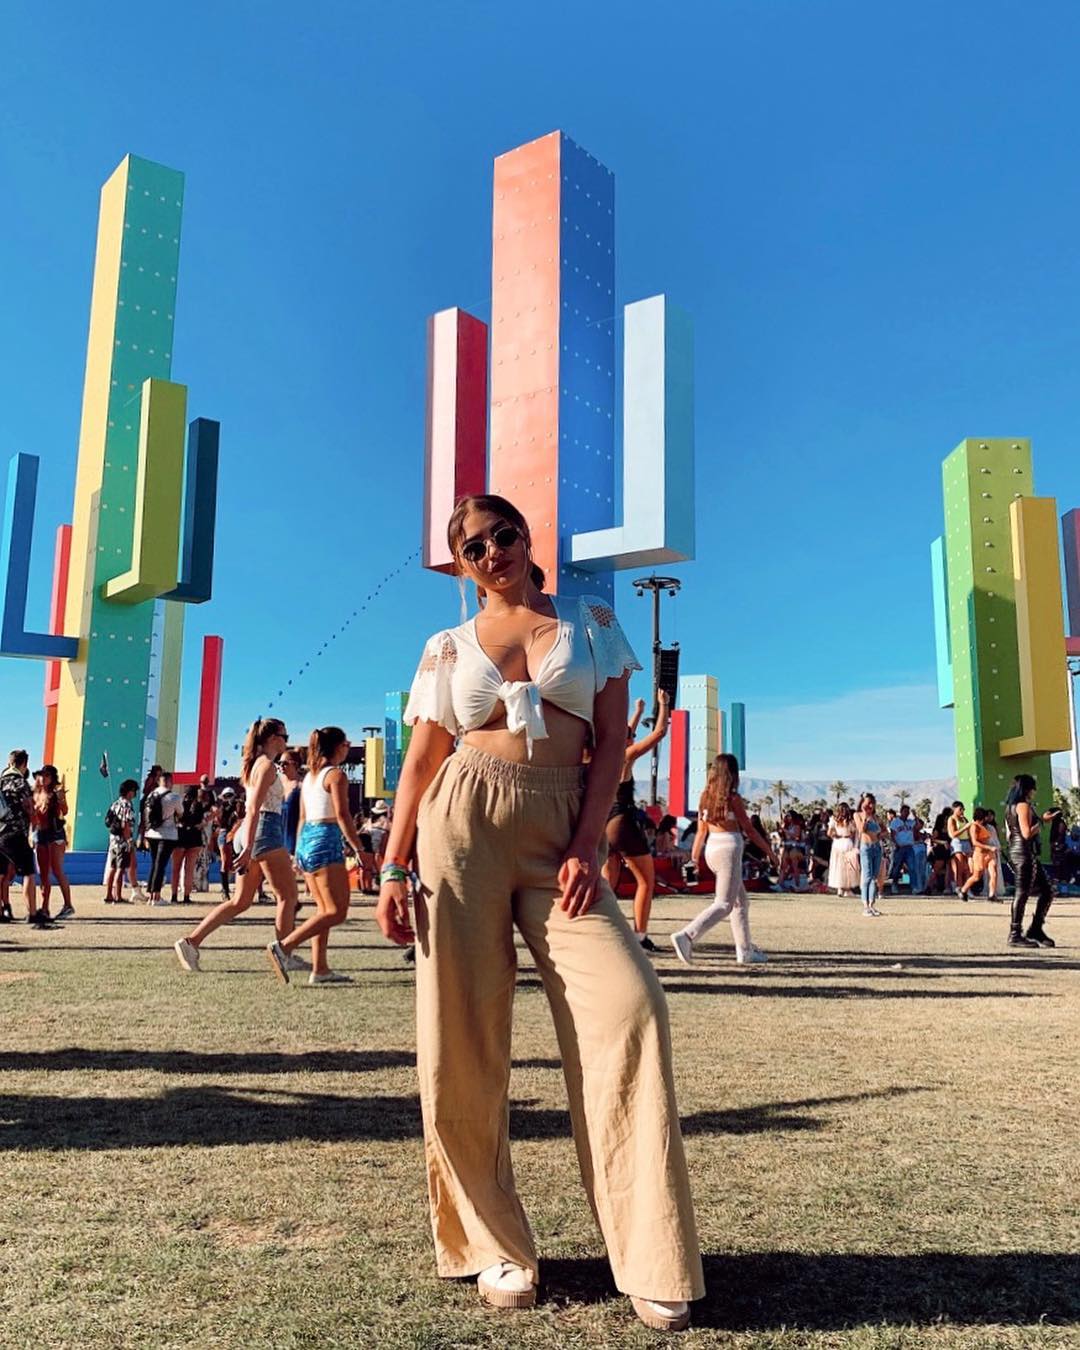 Музыкальный фестиваль Coachella Music Festival 2019